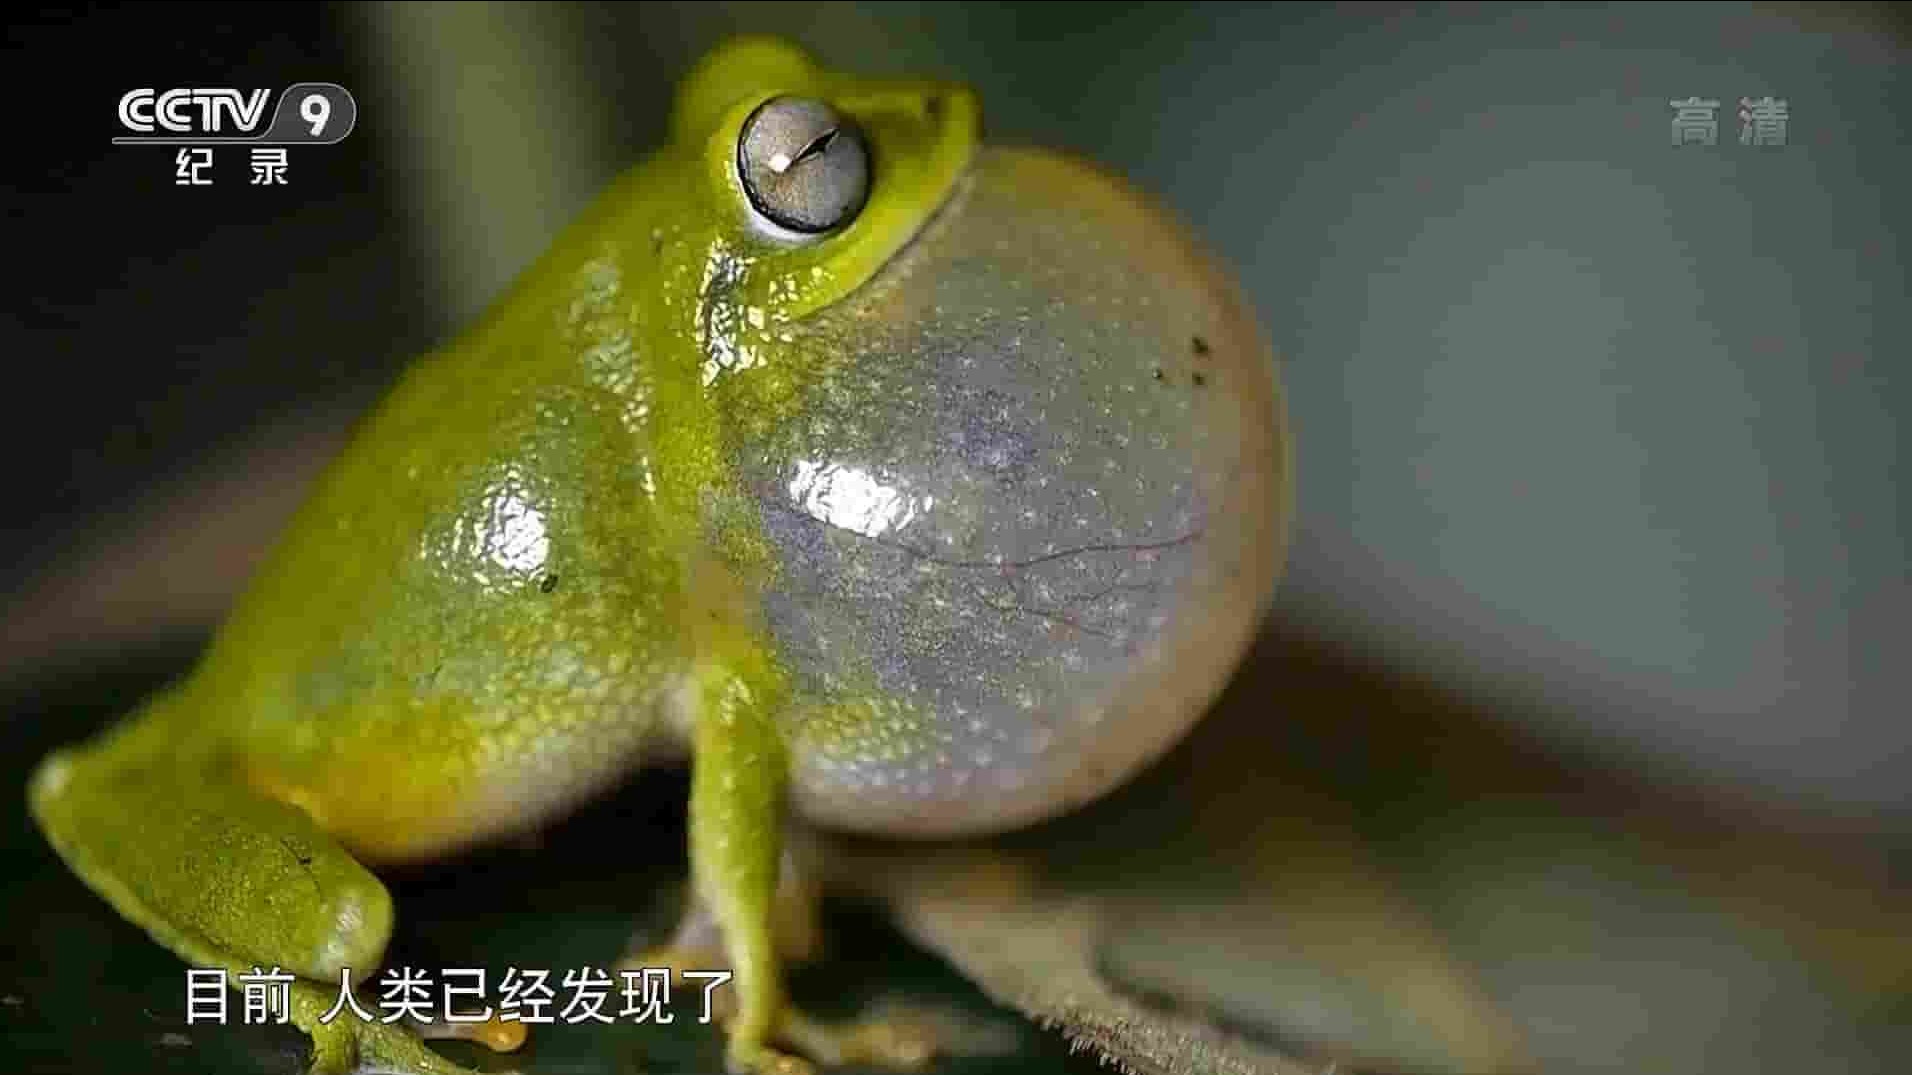 央视纪录片《蛙类的秘密生活 The Secret Life of Frogs 2019》全1集 国语中字 1080P高清网盘下载